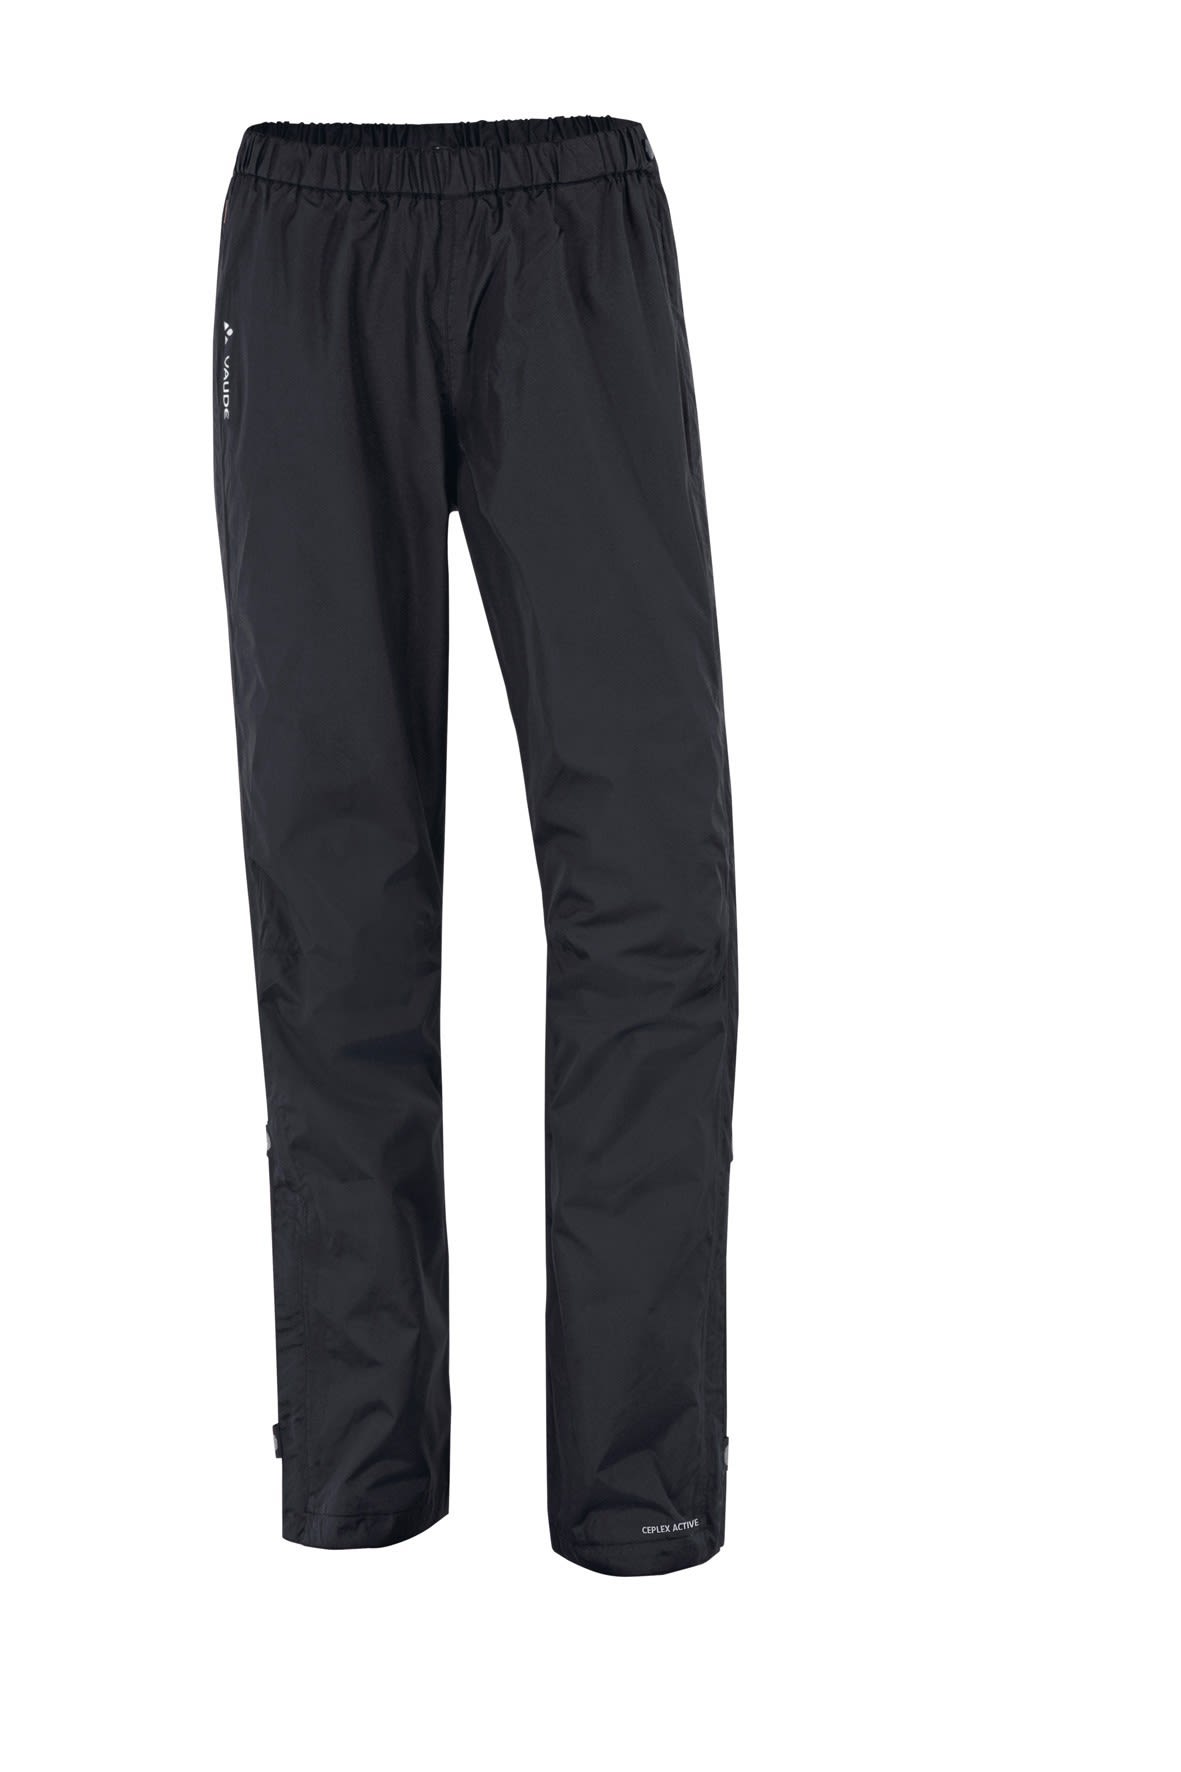 Vaude Fluid Full-Zip Pants Schwarz- Female Hosen- Grsse 34 - Short - Farbe Black